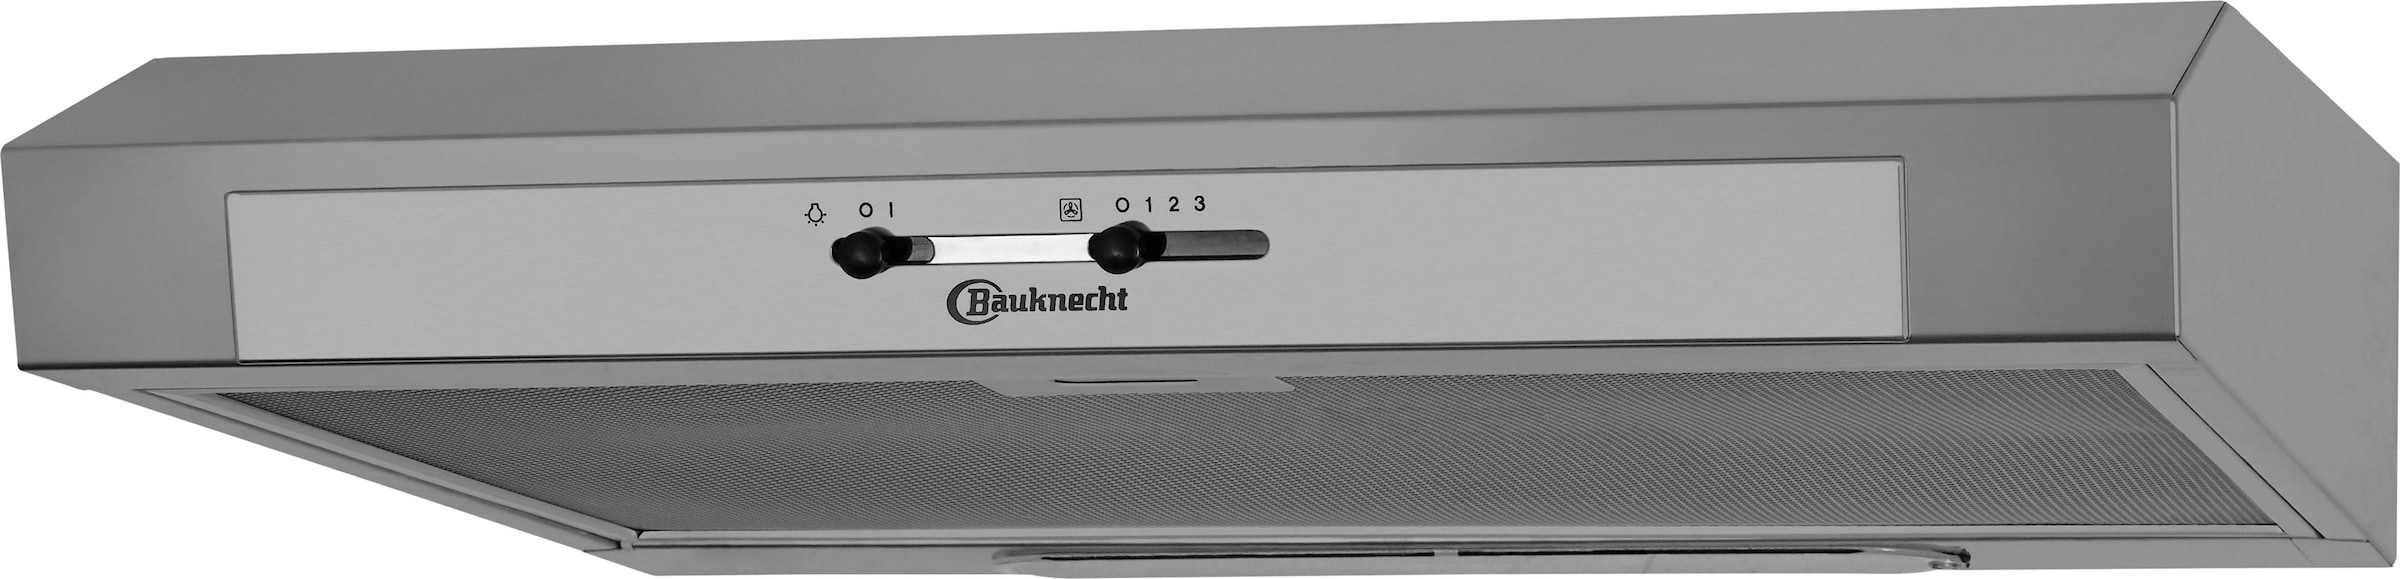 BAUKNECHT Unterbauhaube »DC 5460 IN/1«, 60 cm